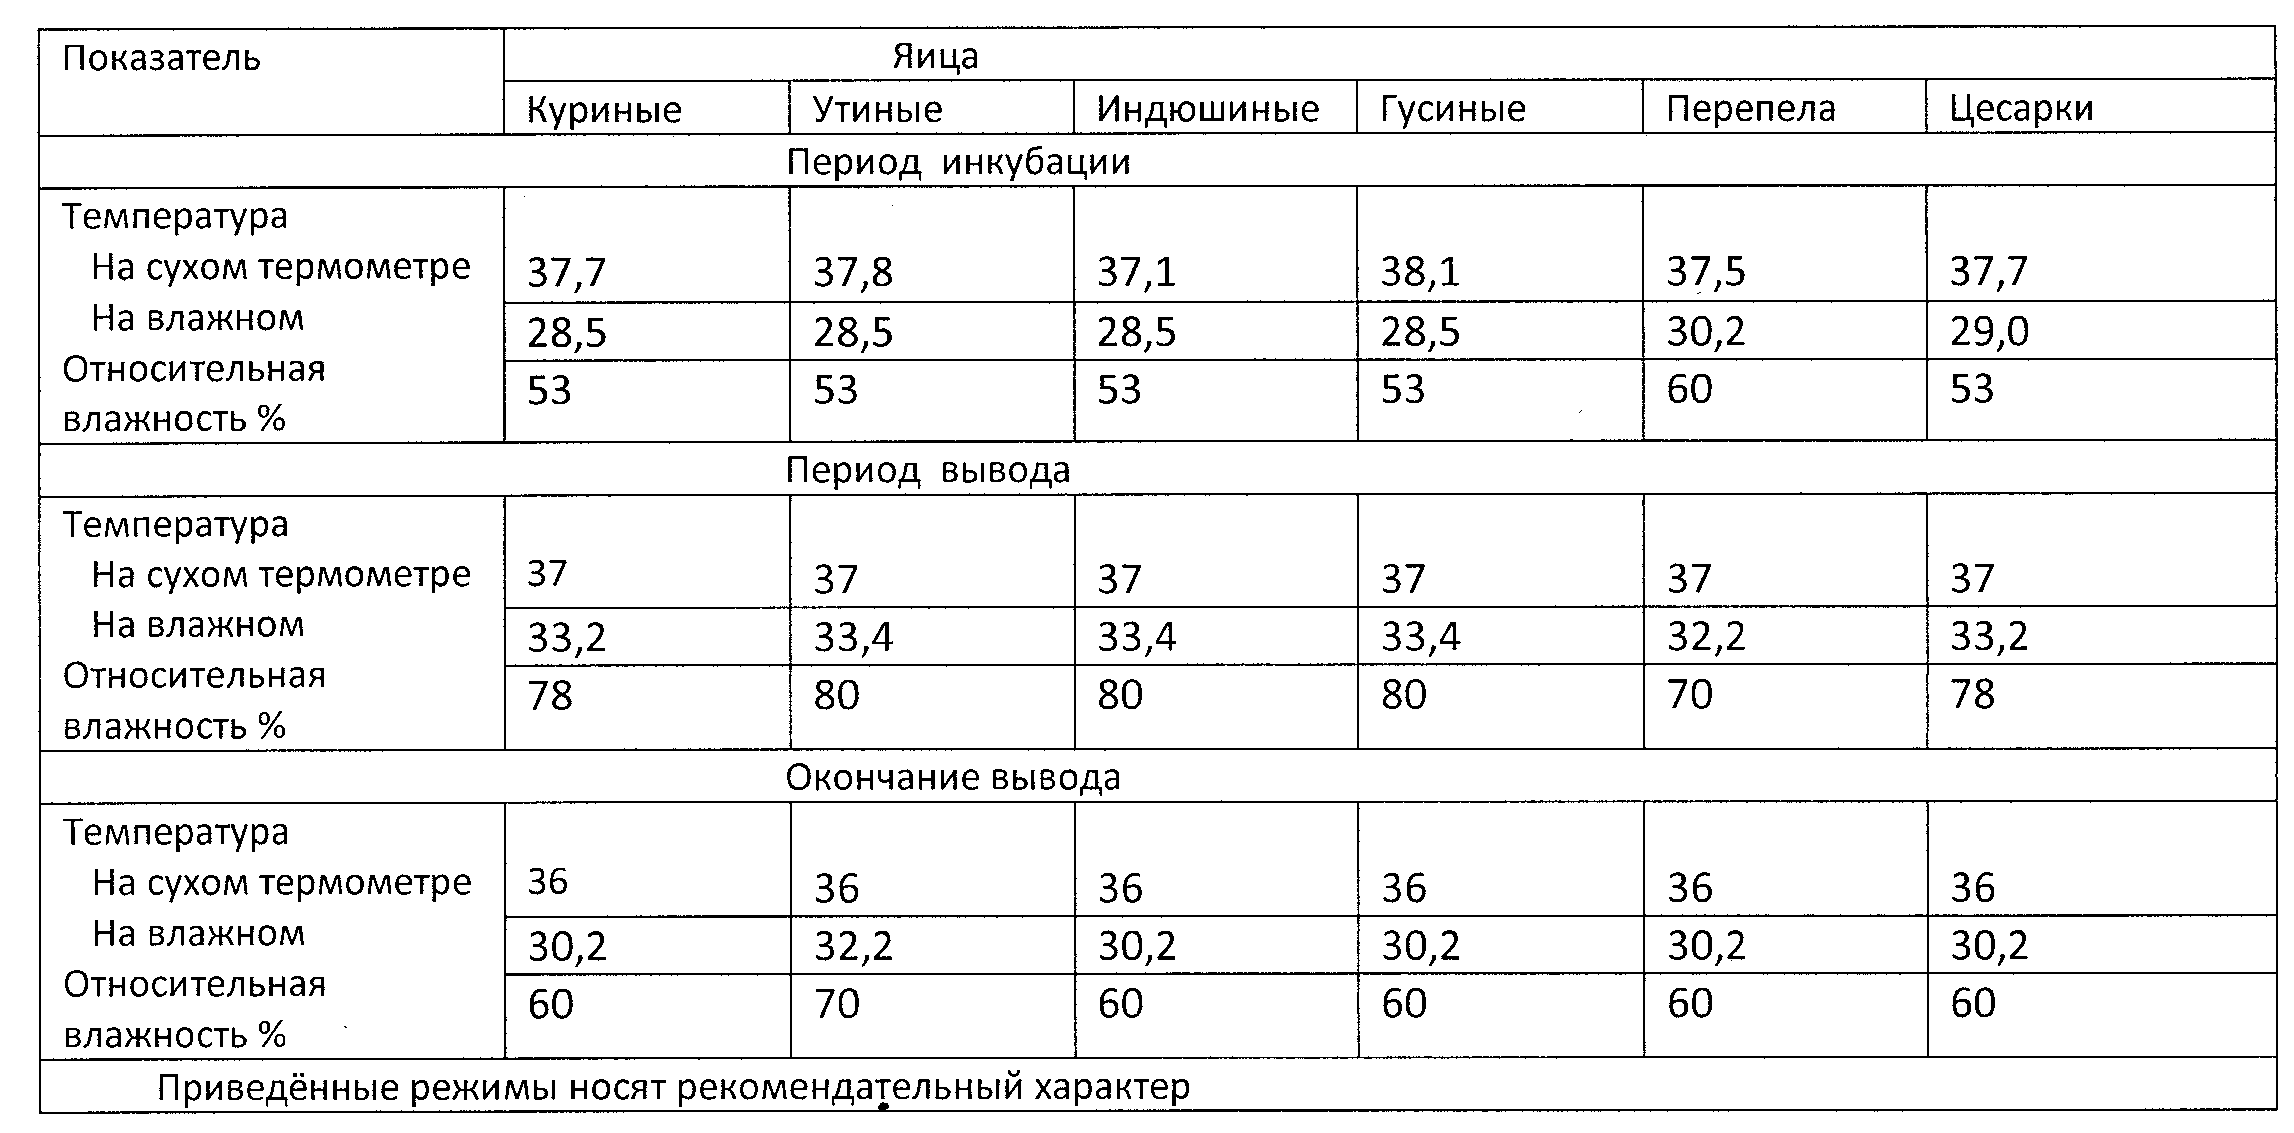 Таблица инкубации индюшиных яиц в инкубаторе